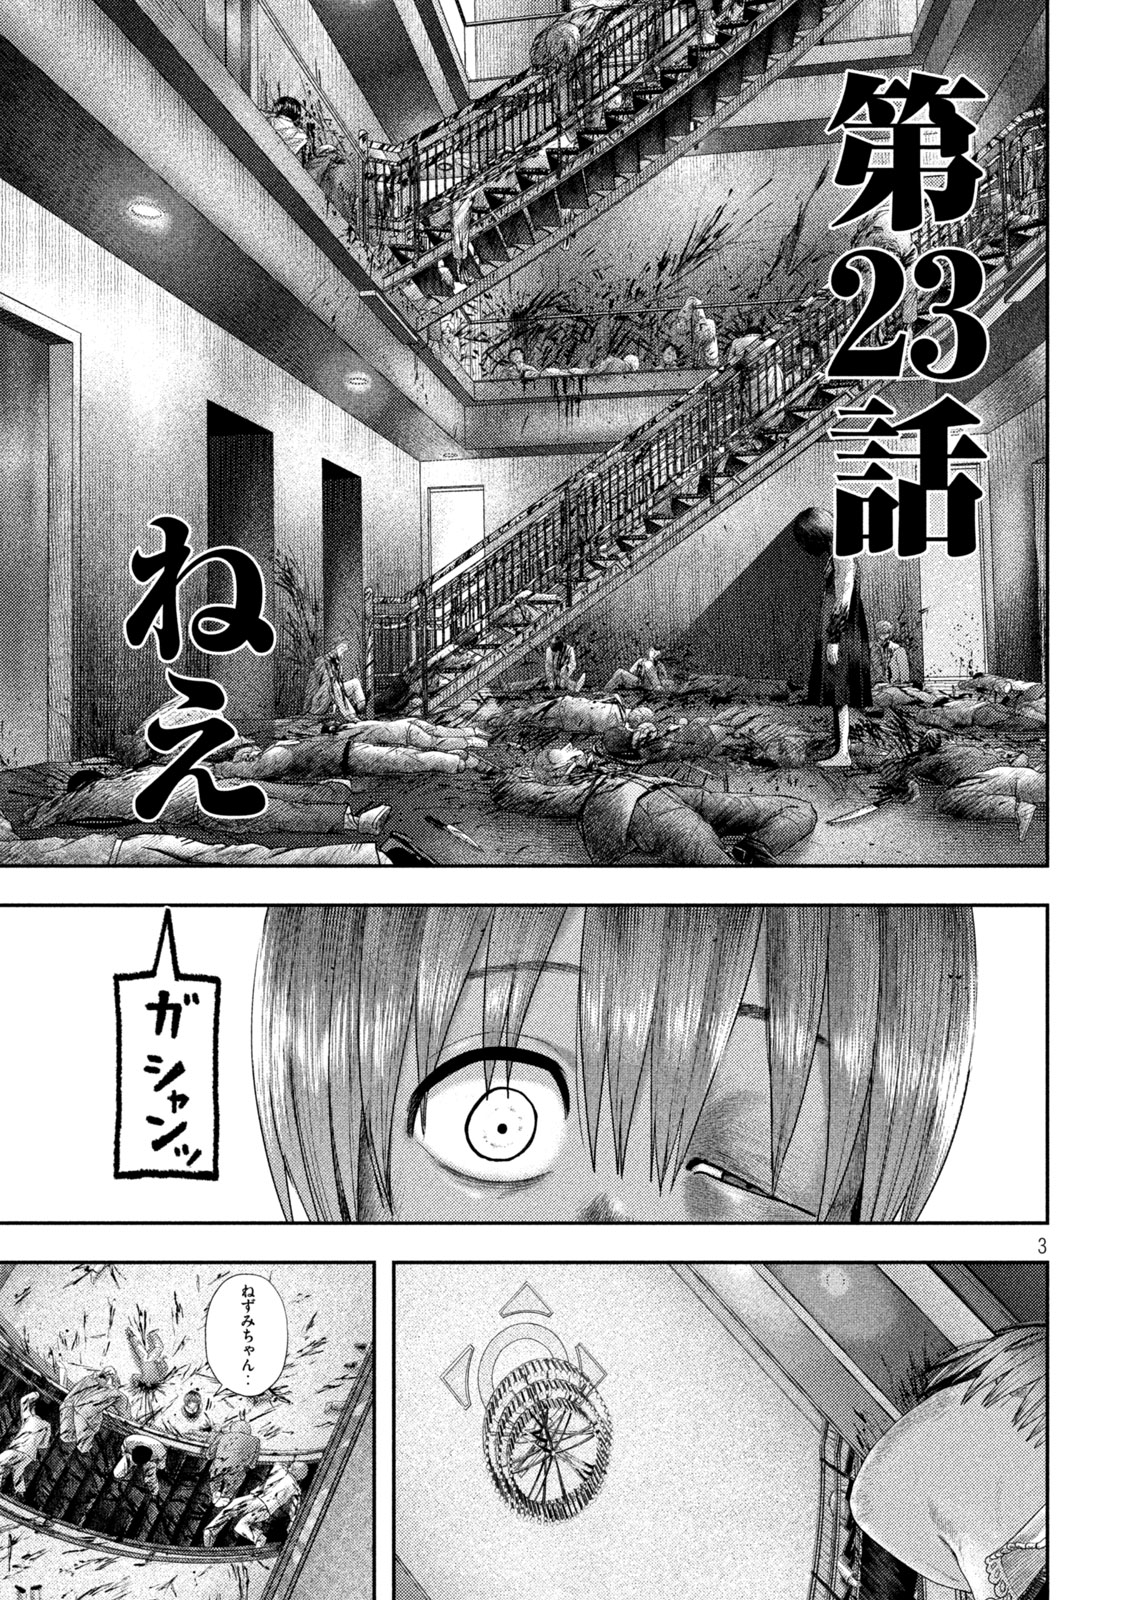 Nezumi no Koi - Chapter 23 - Page 3